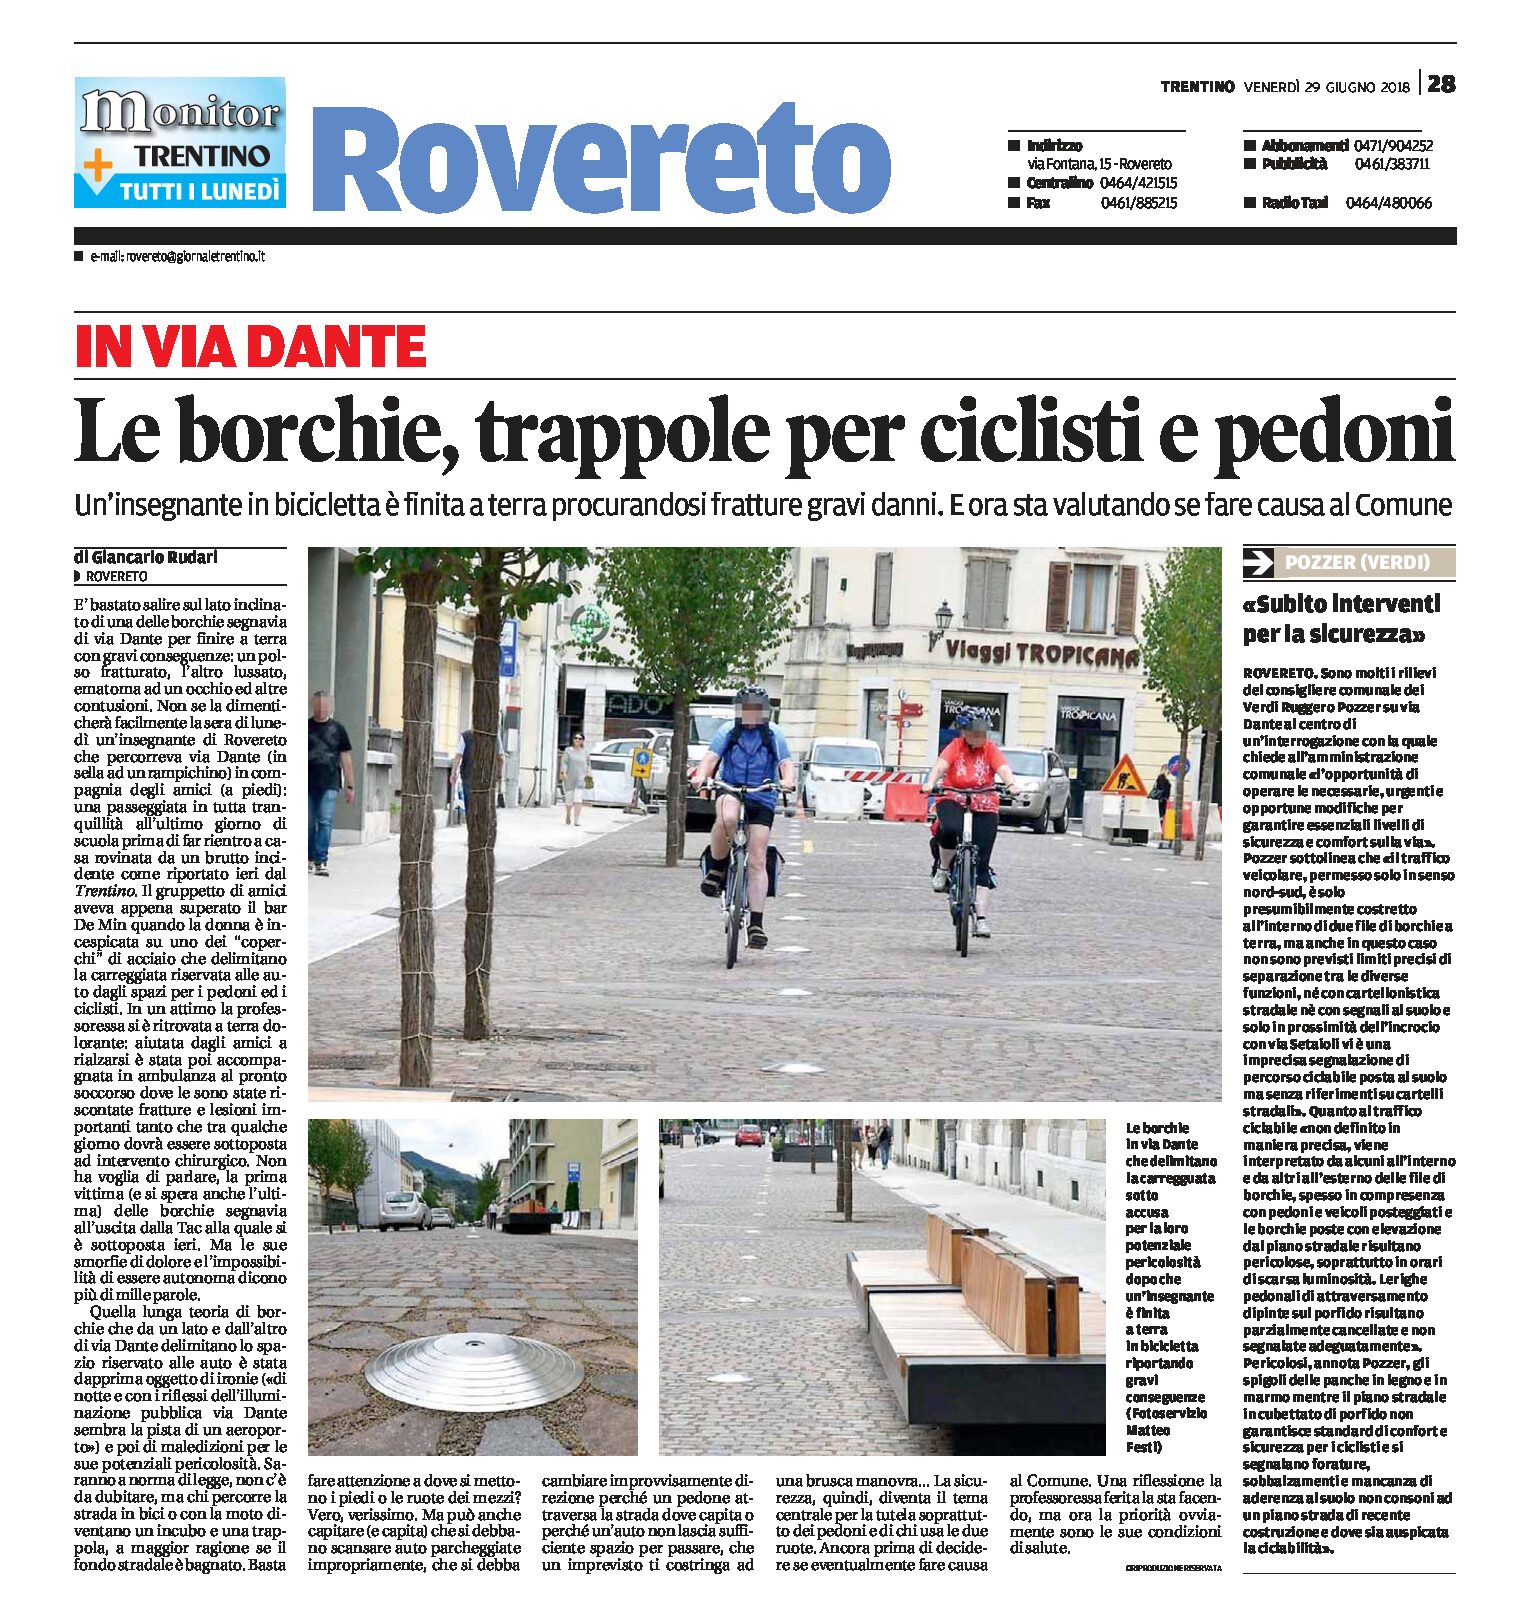 Rovereto, via Dante: le borchie, trappole per ciclisti e pedoni